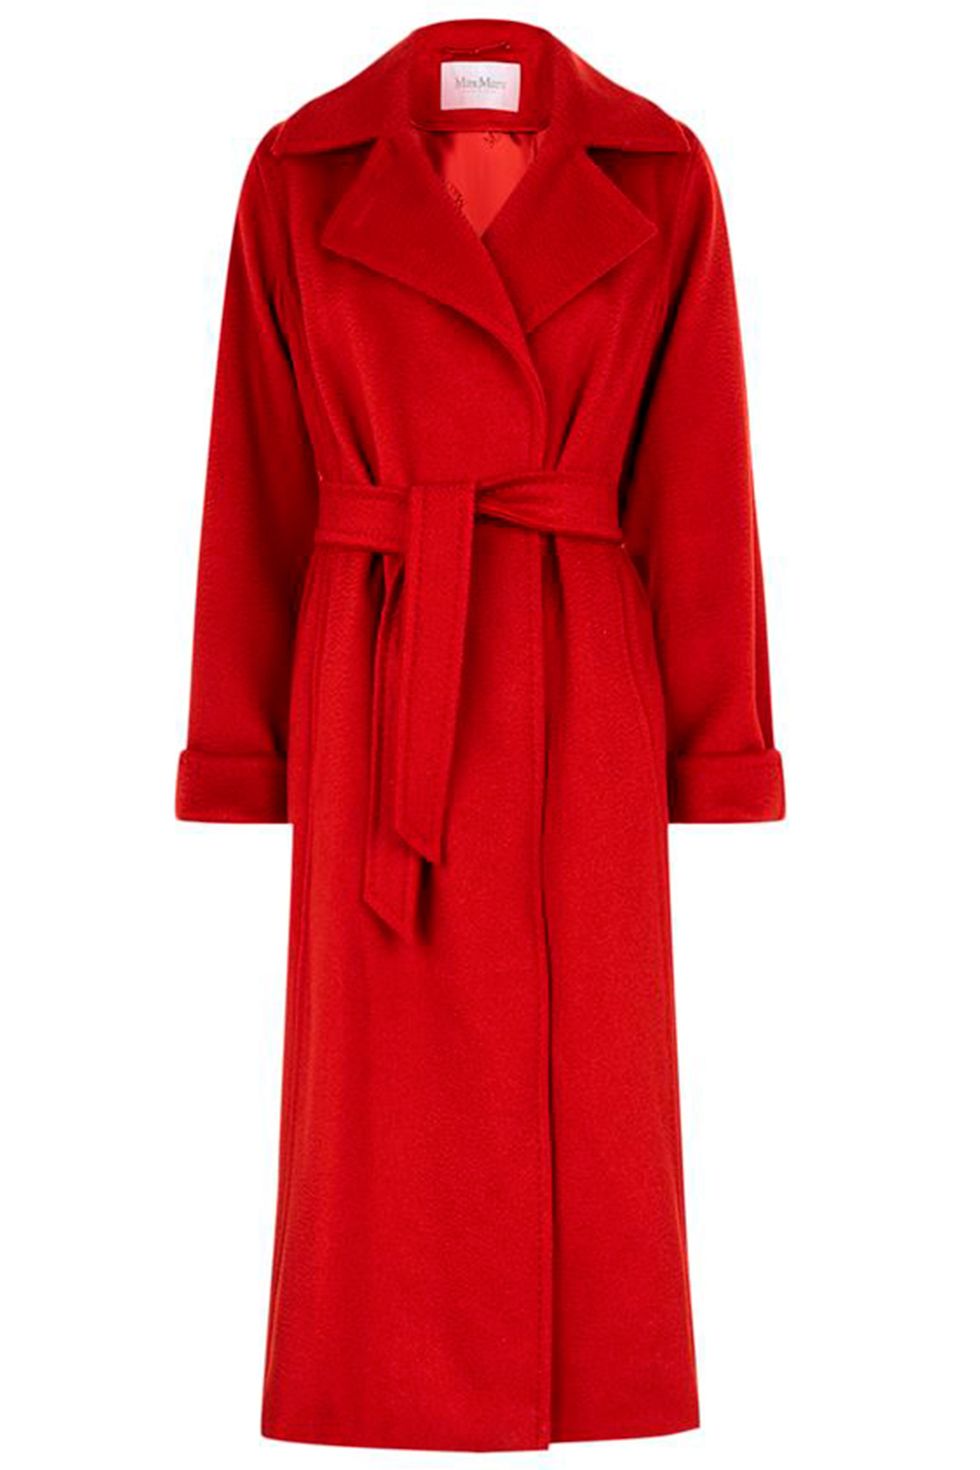 Best red fashion - autumn/winter 2017 trend